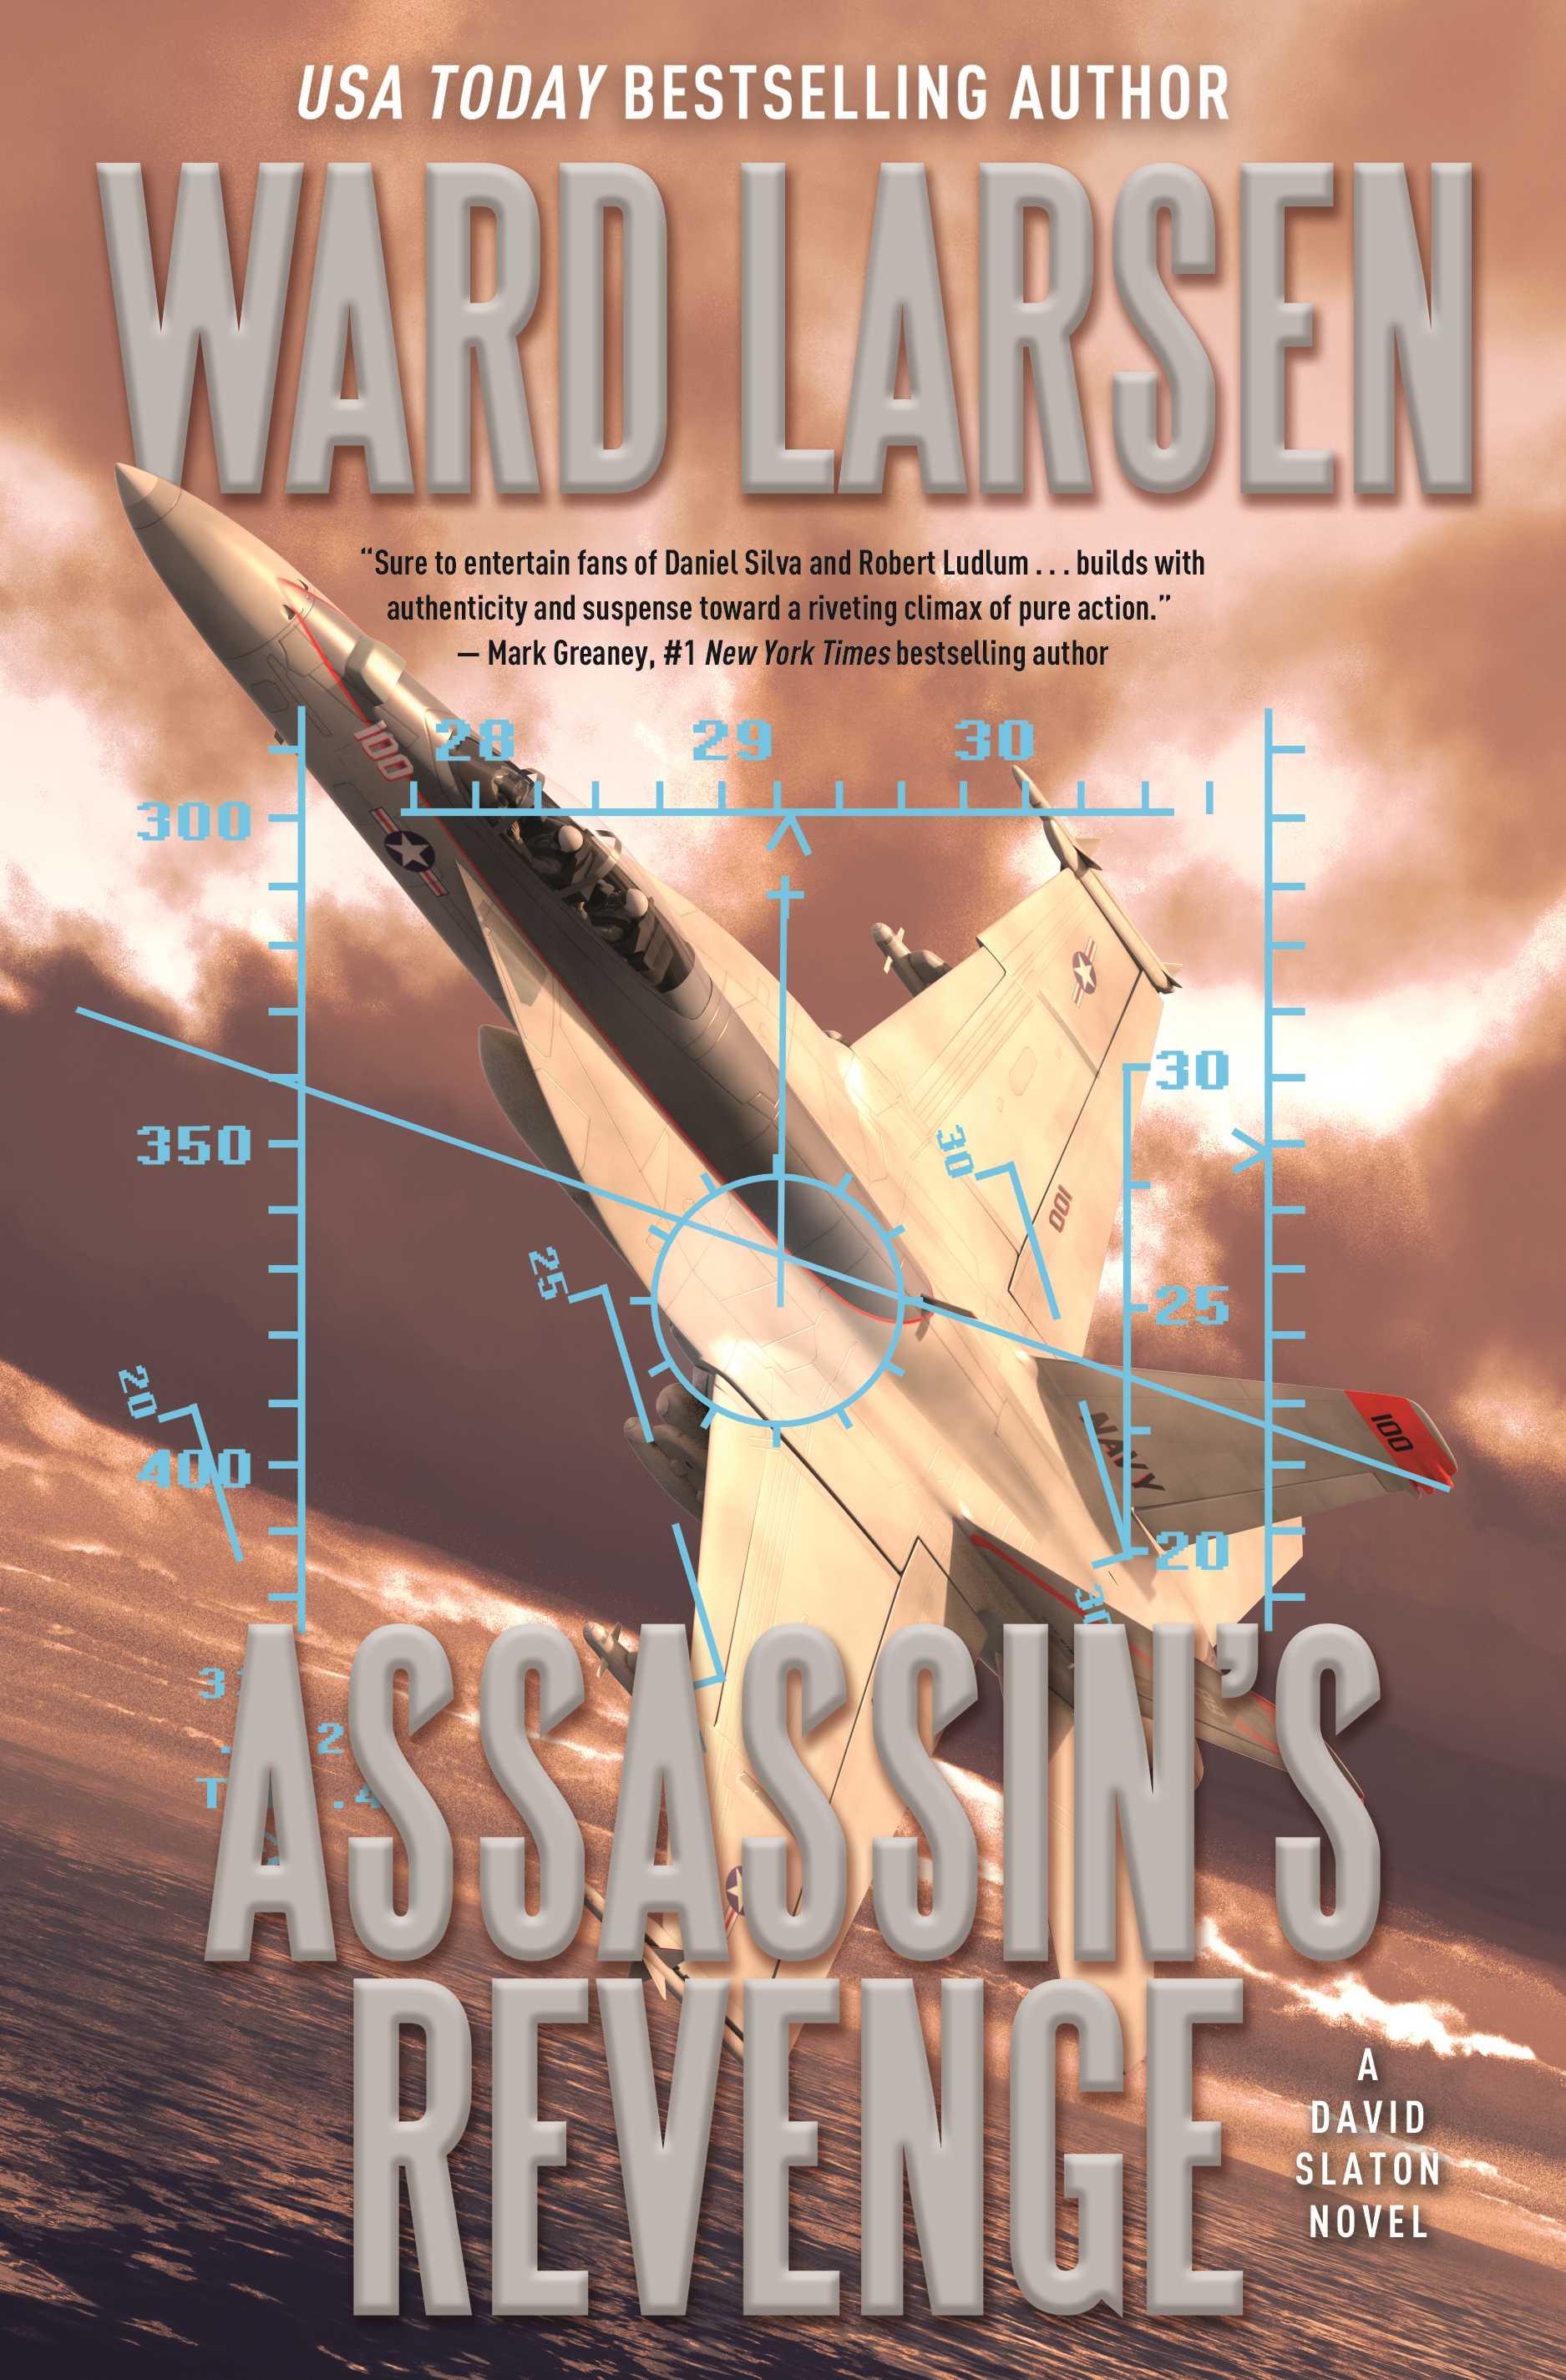 Assassin's Revenge : A David Slaton Novel by Ward Larsen